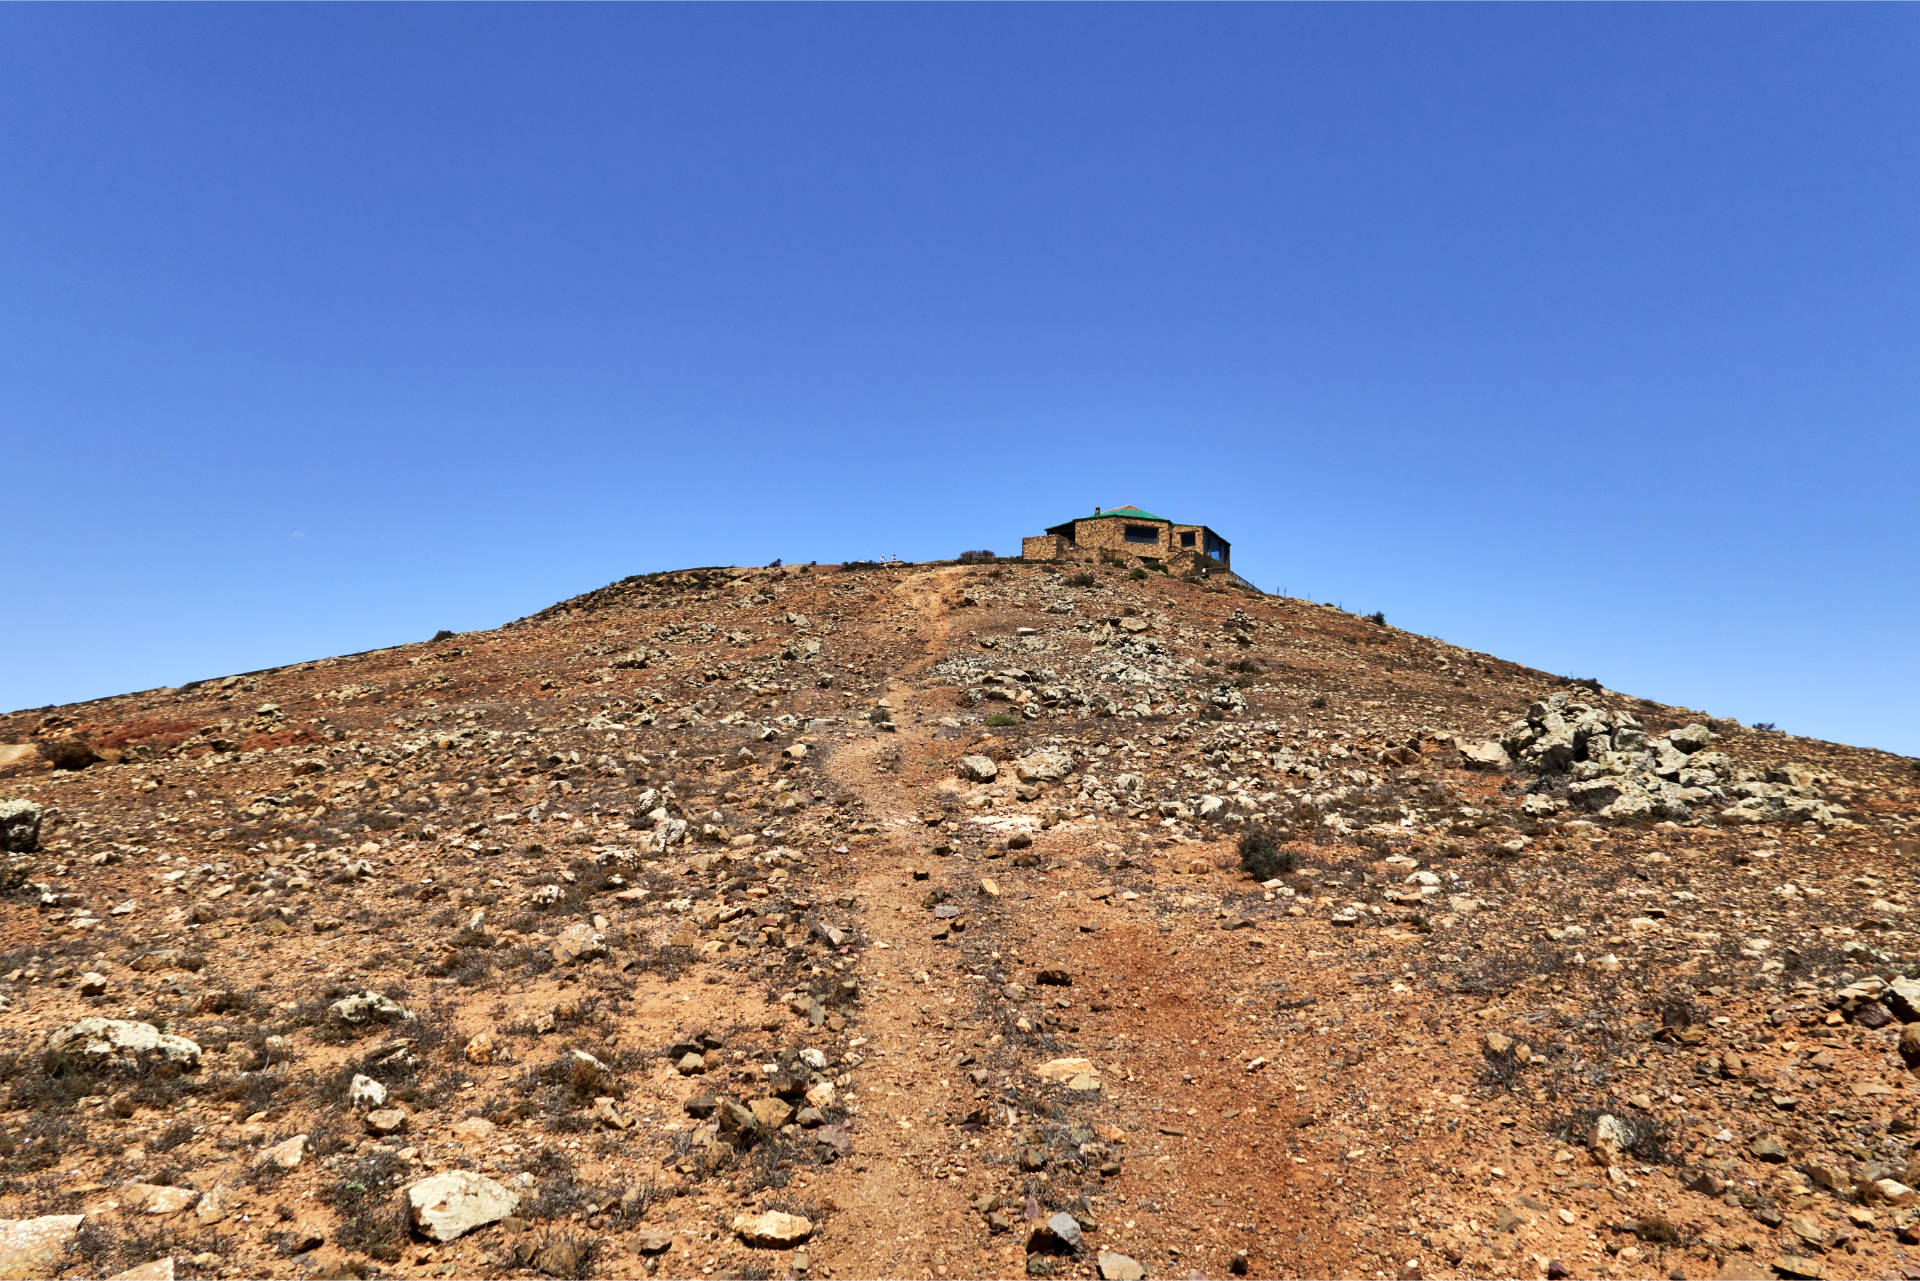 Anstieg zum Mirador Morro de Veloso (676 m).